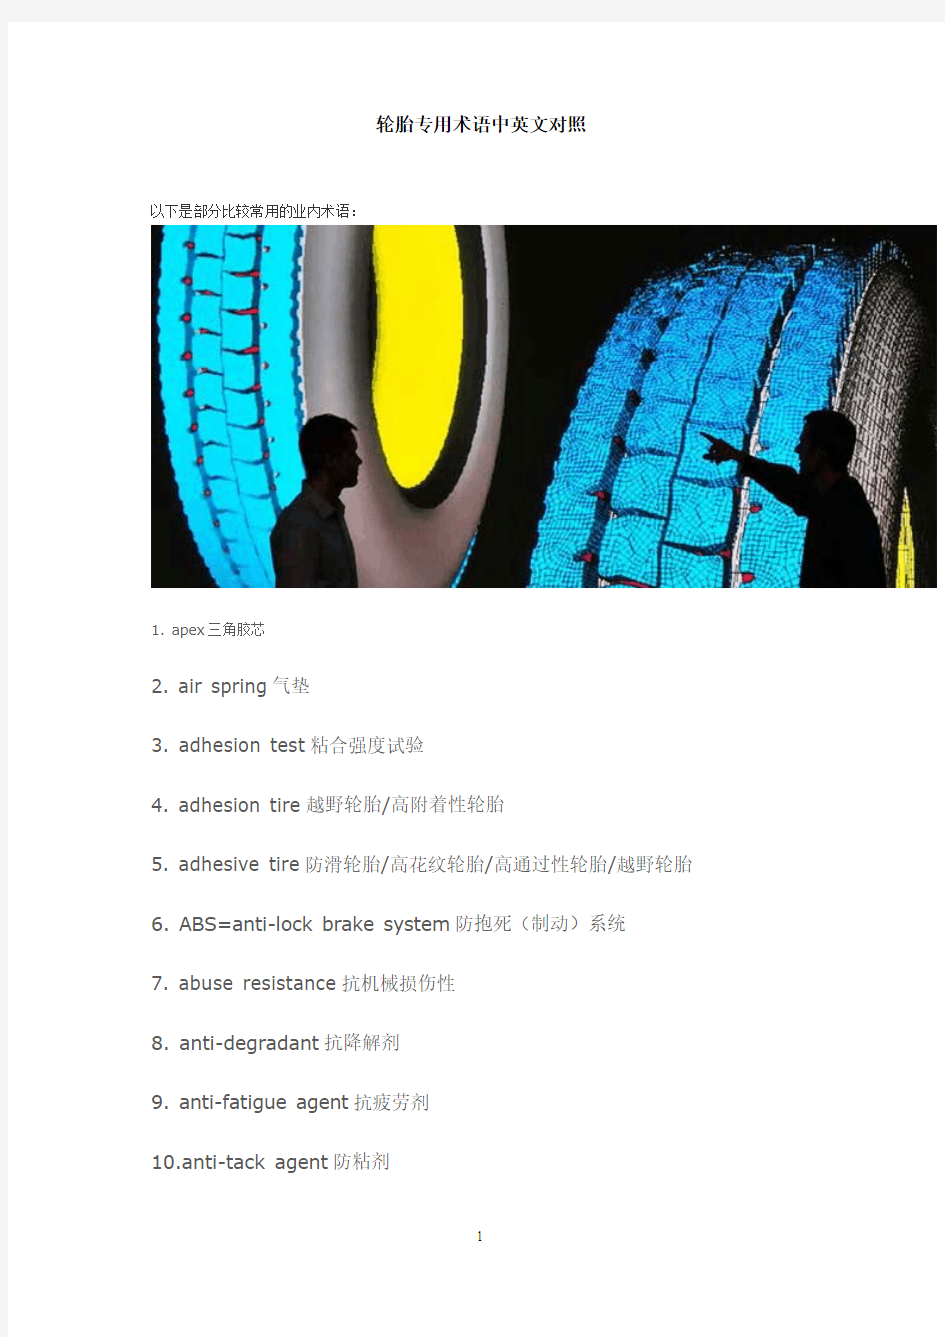 轮胎专用术语中英文对照